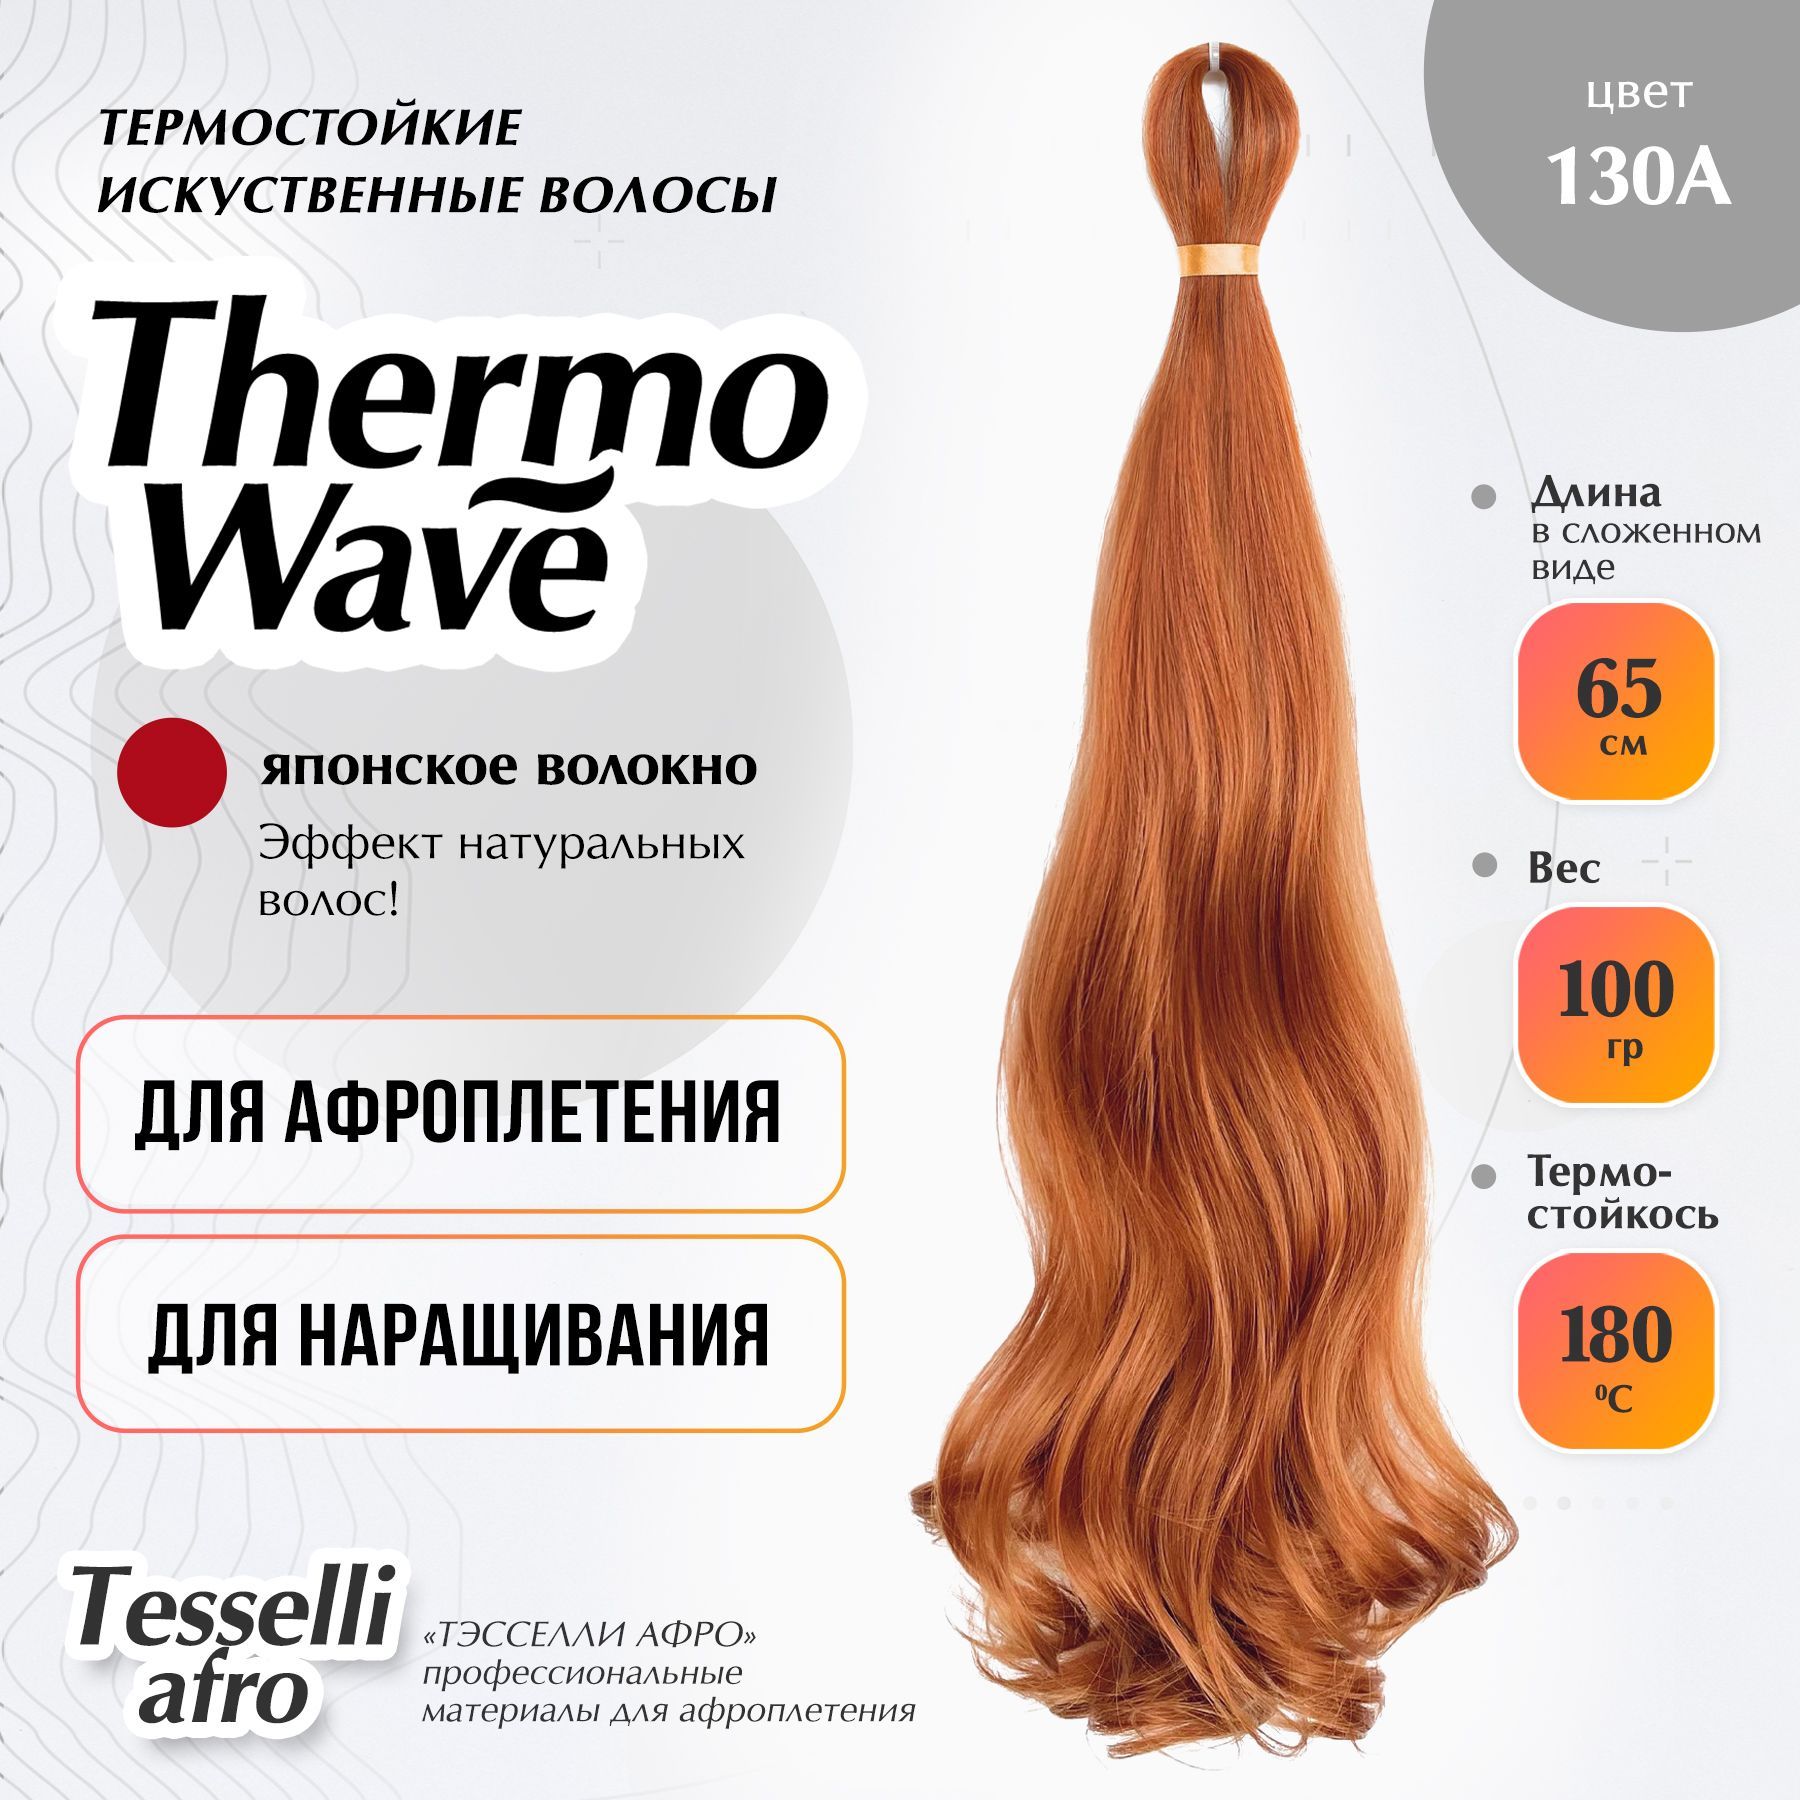 Как делают парики из натуральных и искусственных волос